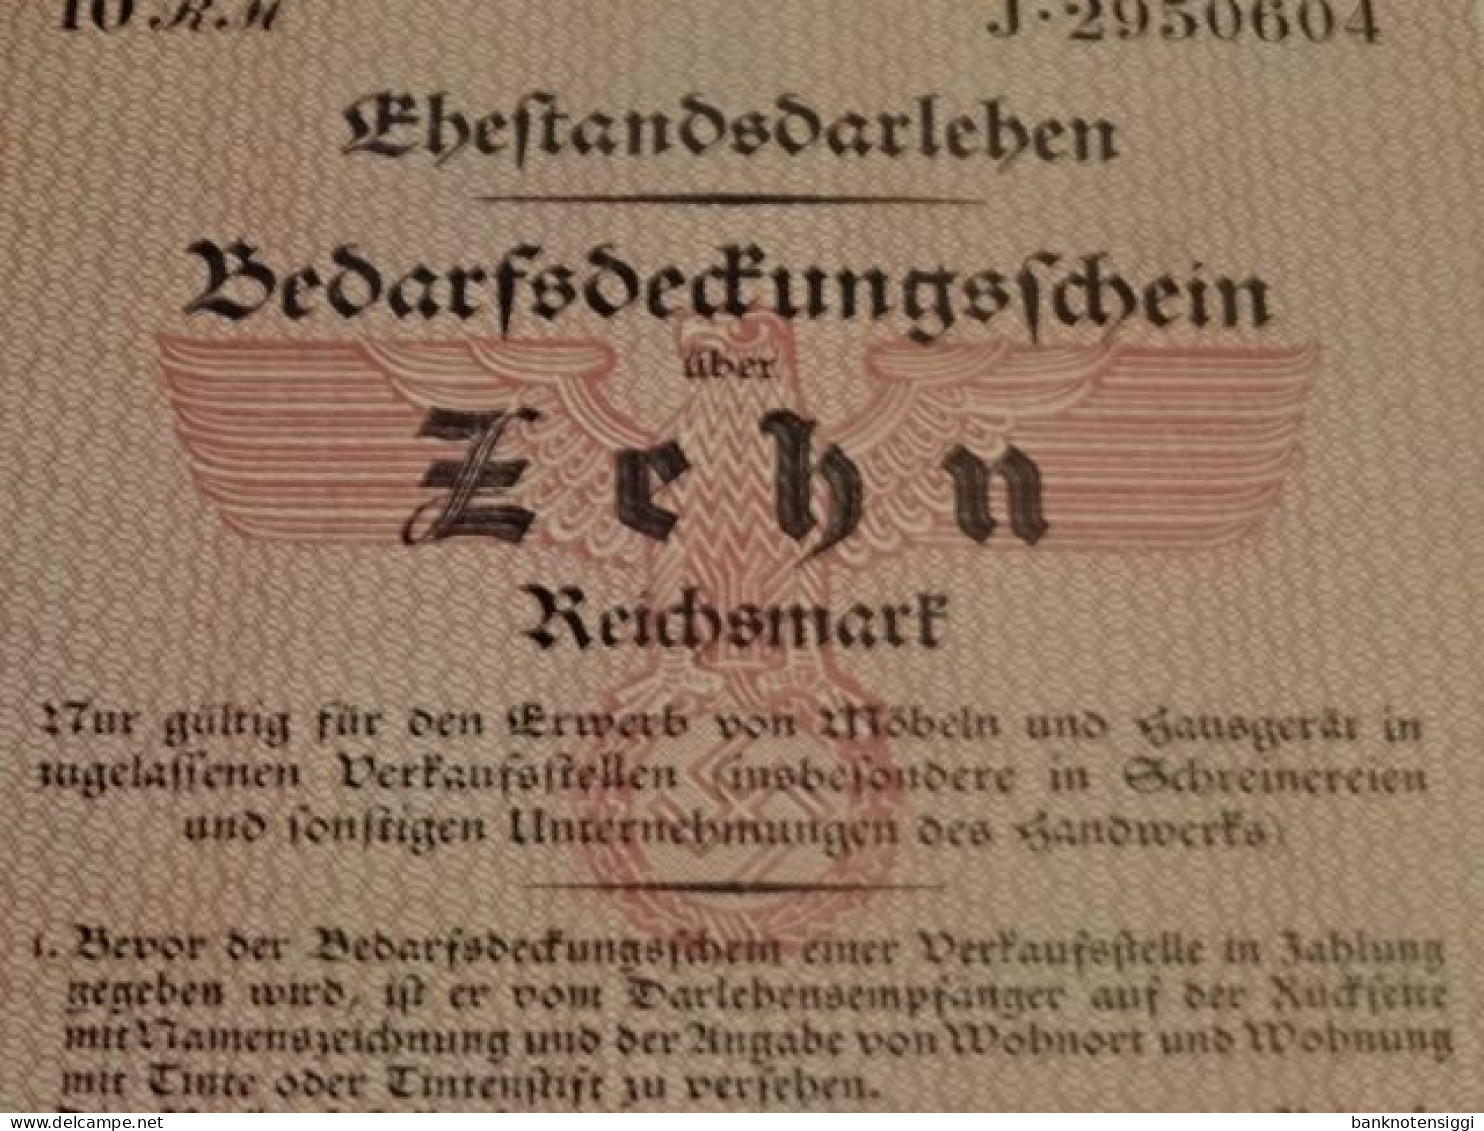 Ehestandesdarlehen. 10 Reichsmark   20 Juli 1933 - 100 Reichsmark